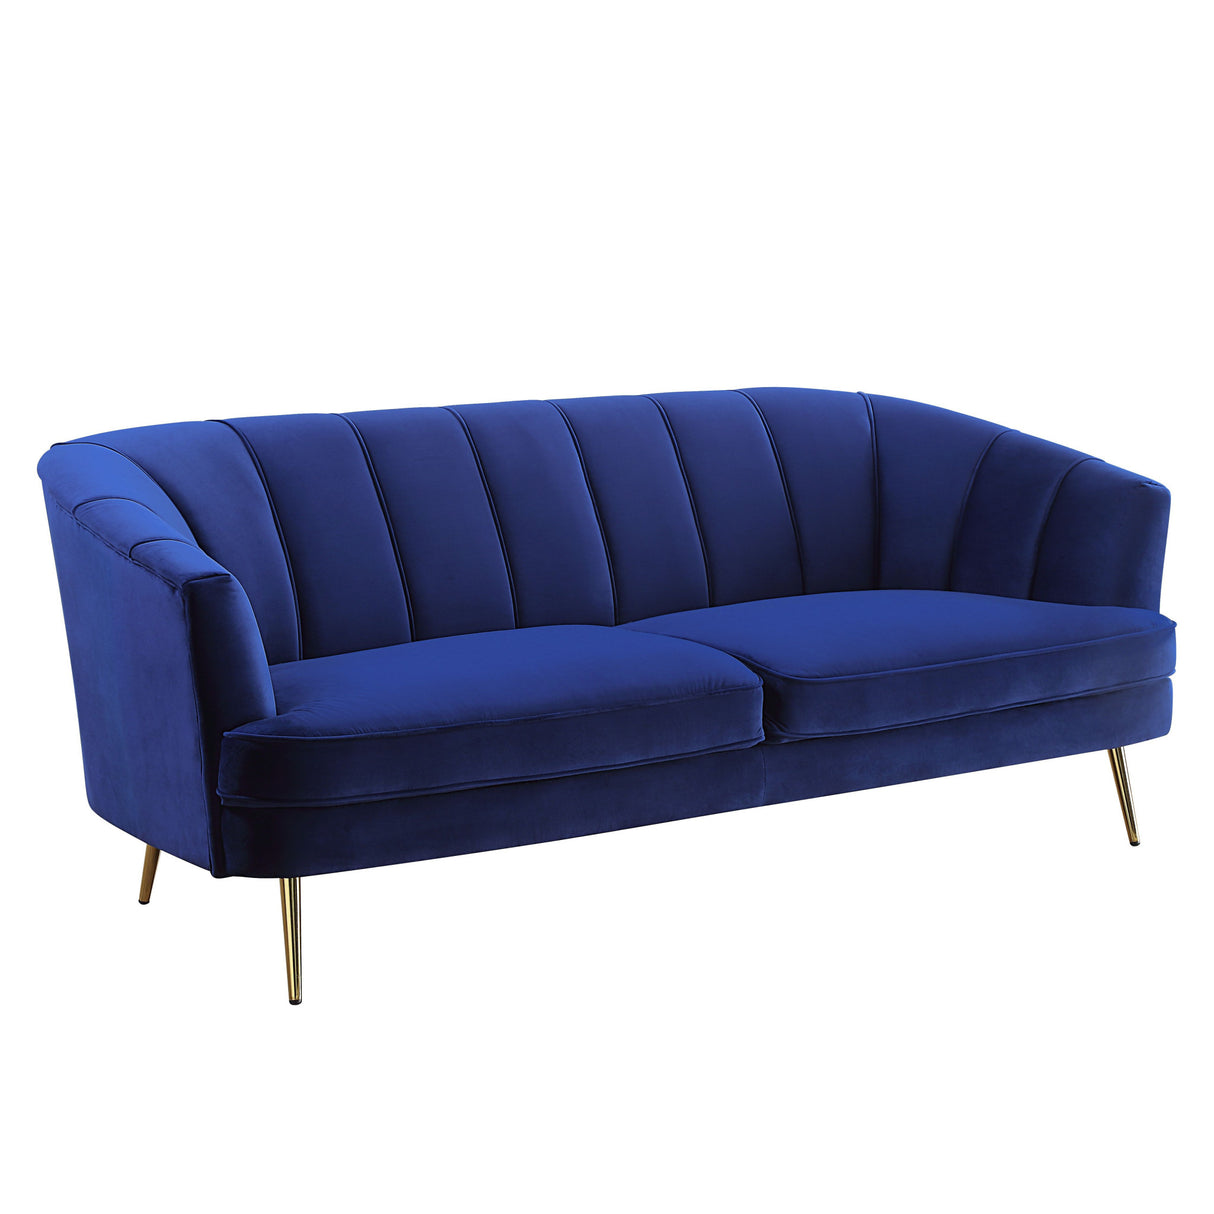 78" Blue Velvet Sofa With Gold Legs